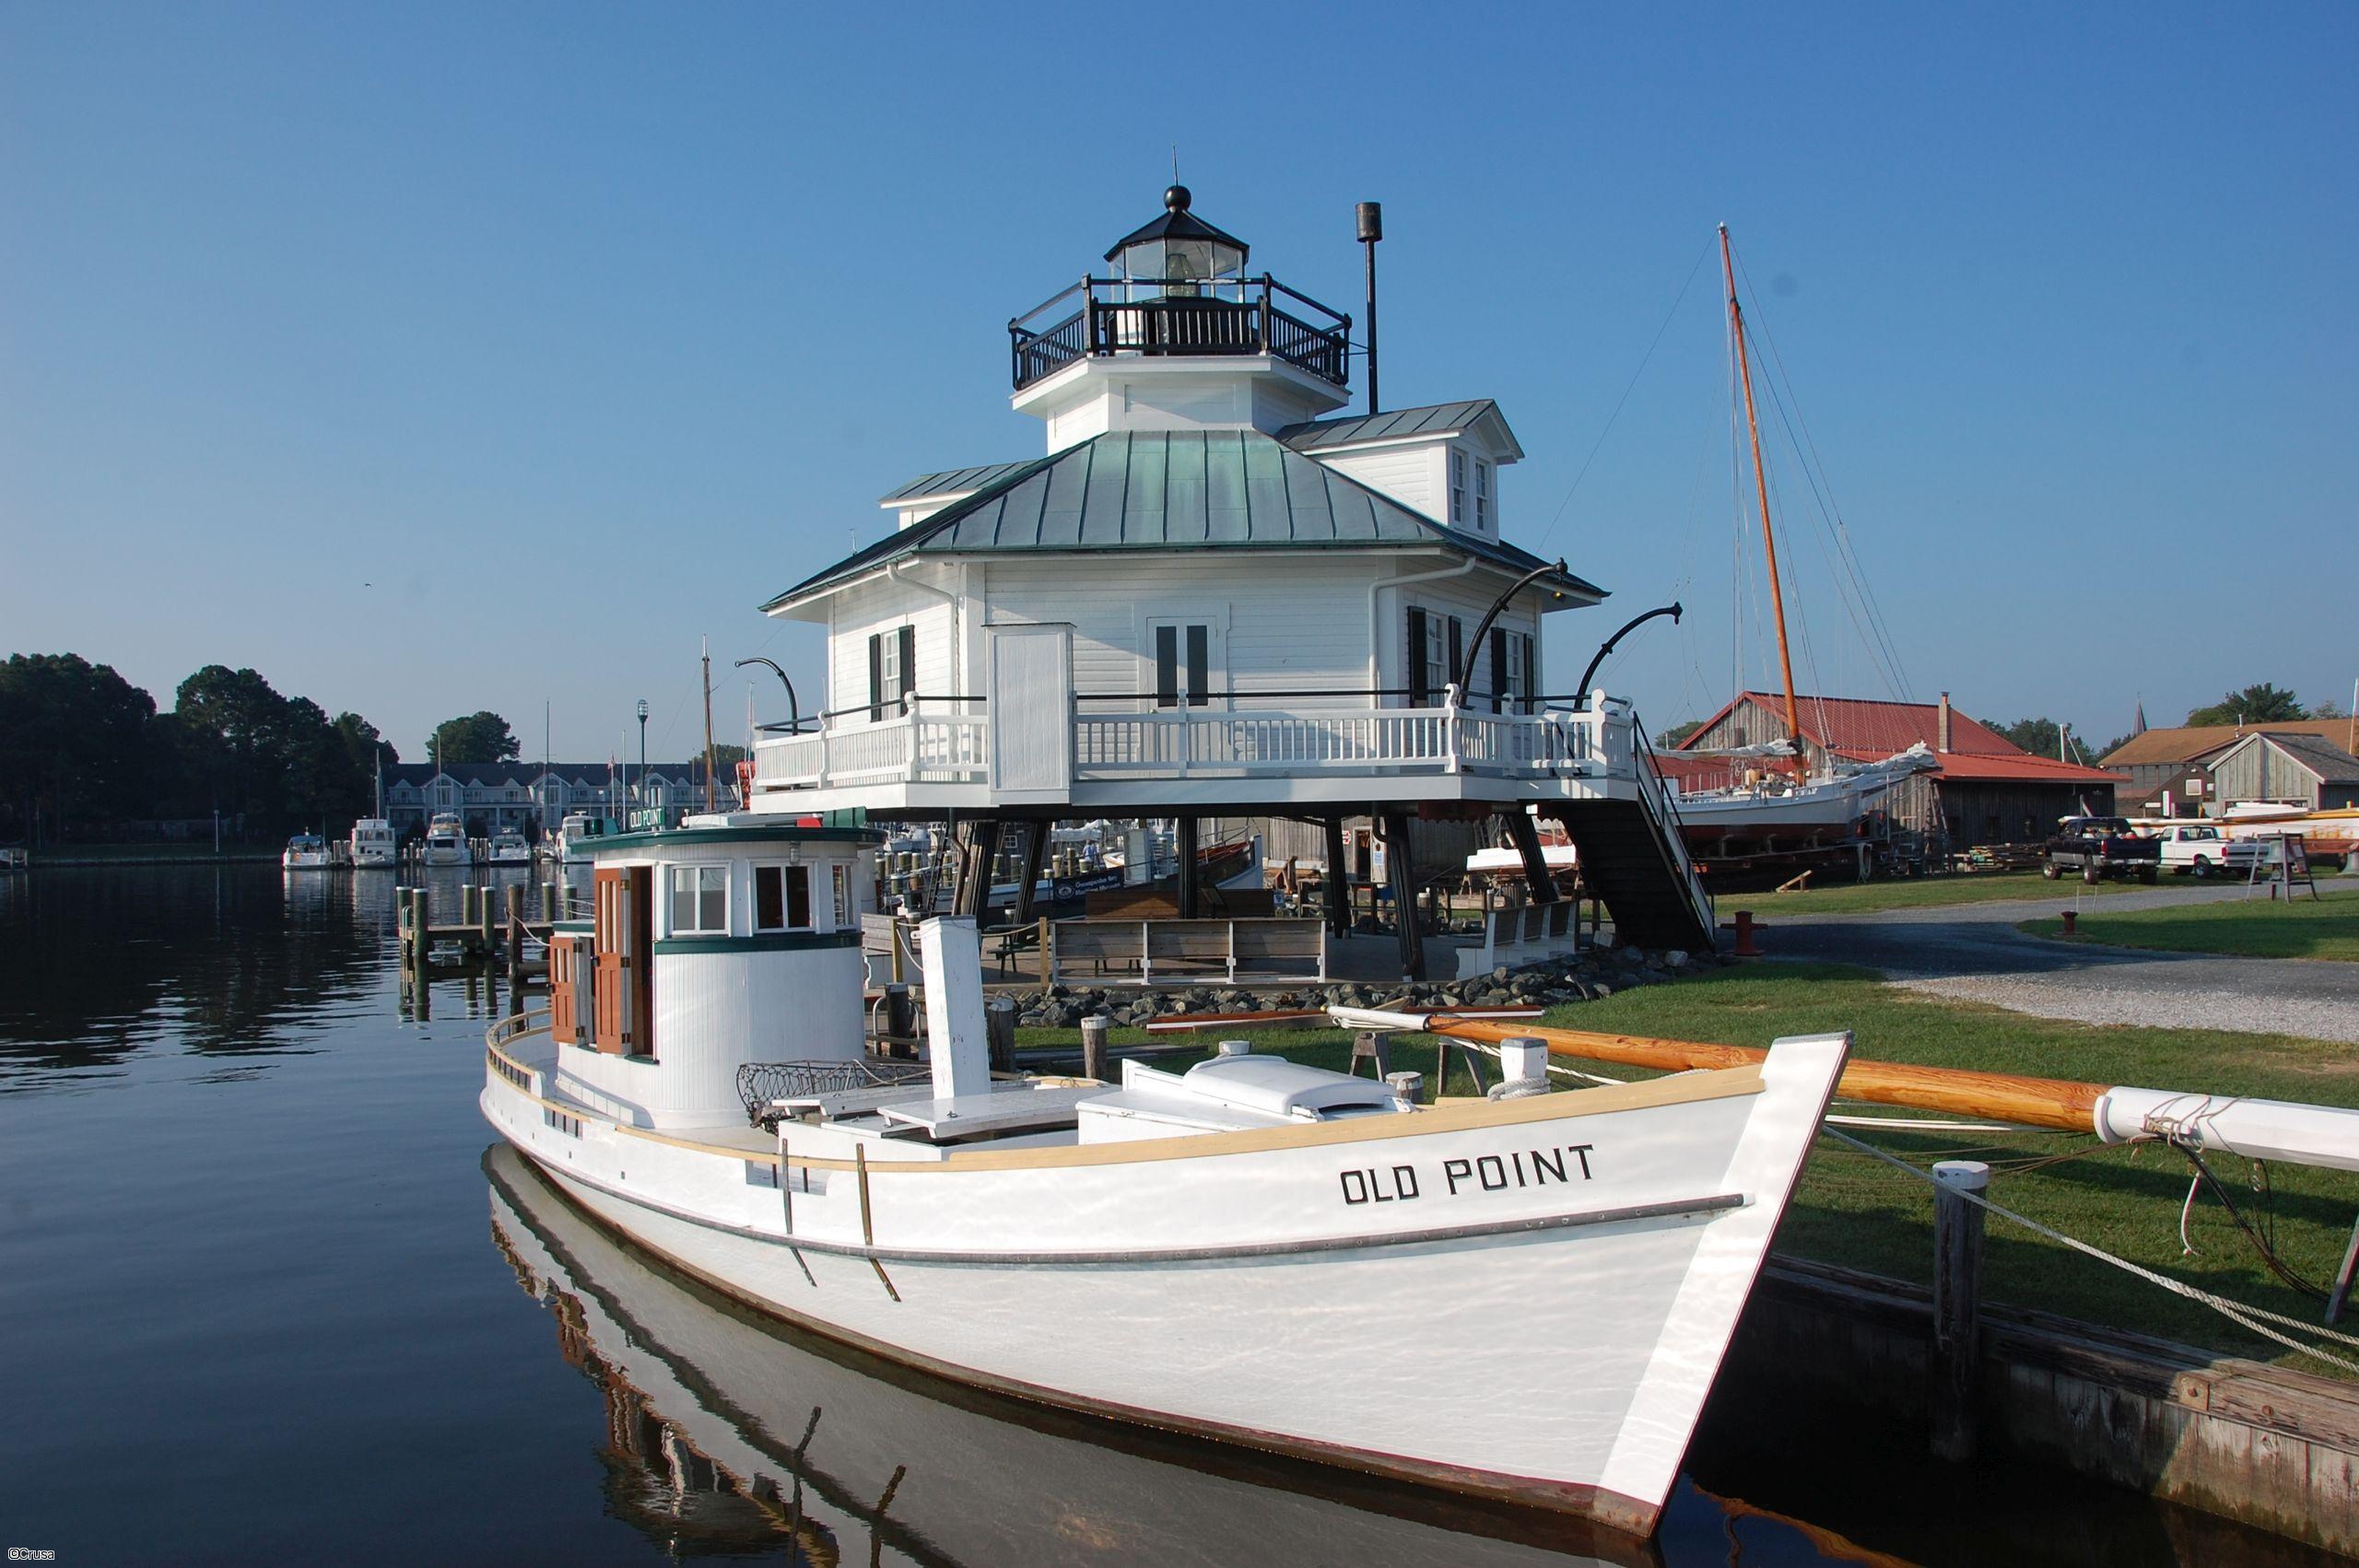 Le Musée Maritime de la Baie de Chesapeake situé dans la charmante petite ville de St Michaels